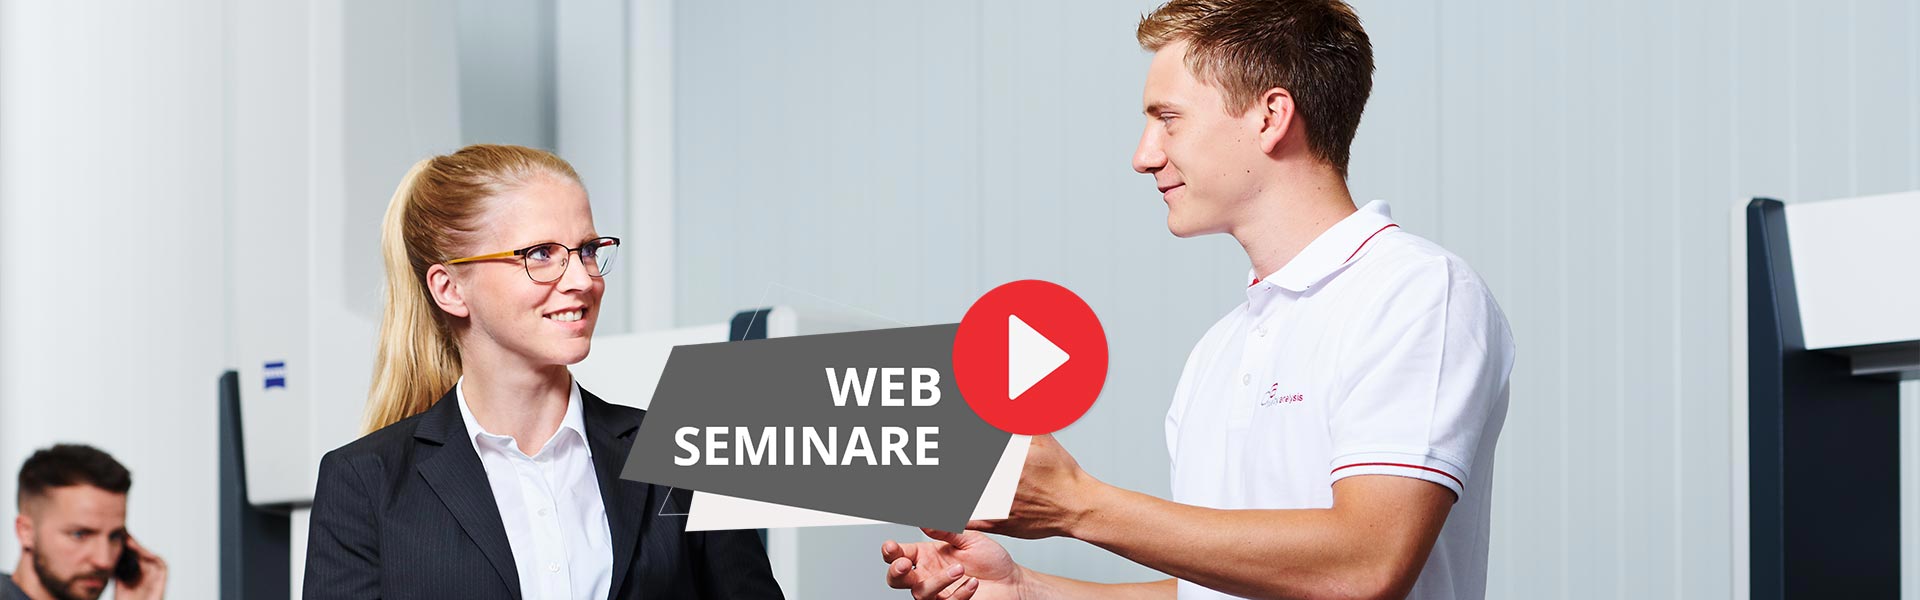 Web-Seminare bei Quality Analysis